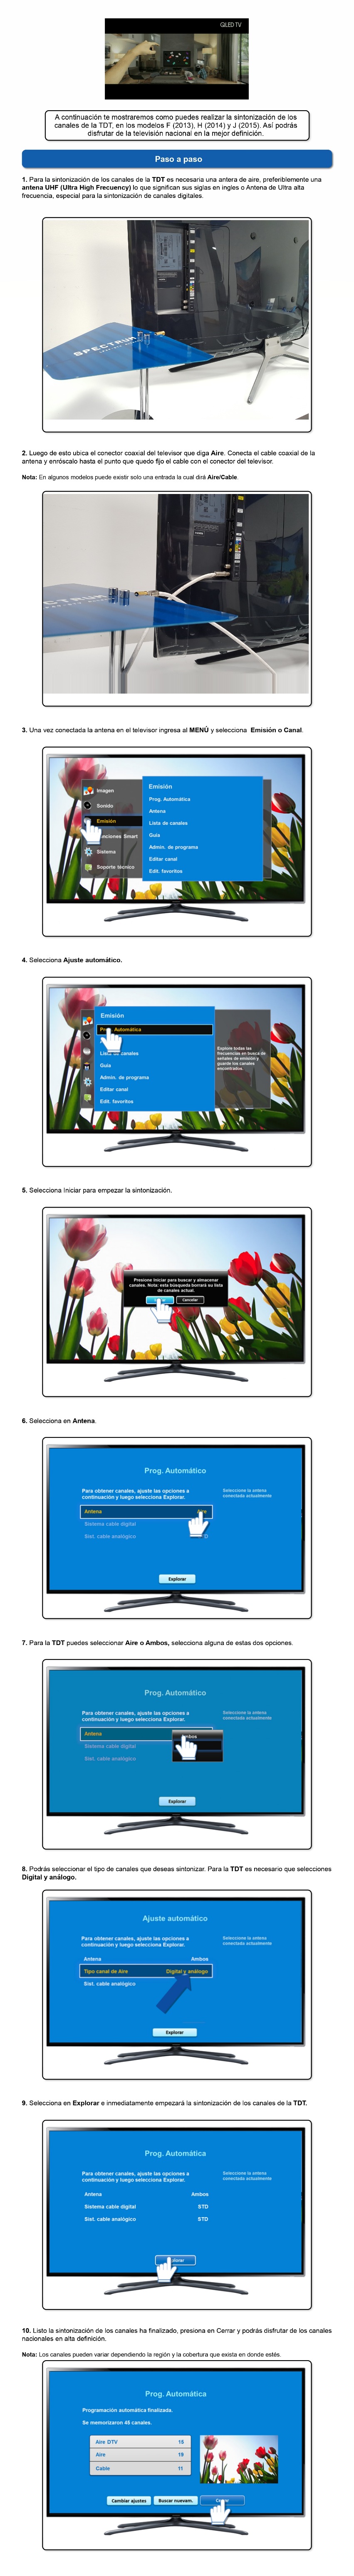 Samsung TV - ¿Cómo sintonizar los canales de la TDT en modelos serie K?